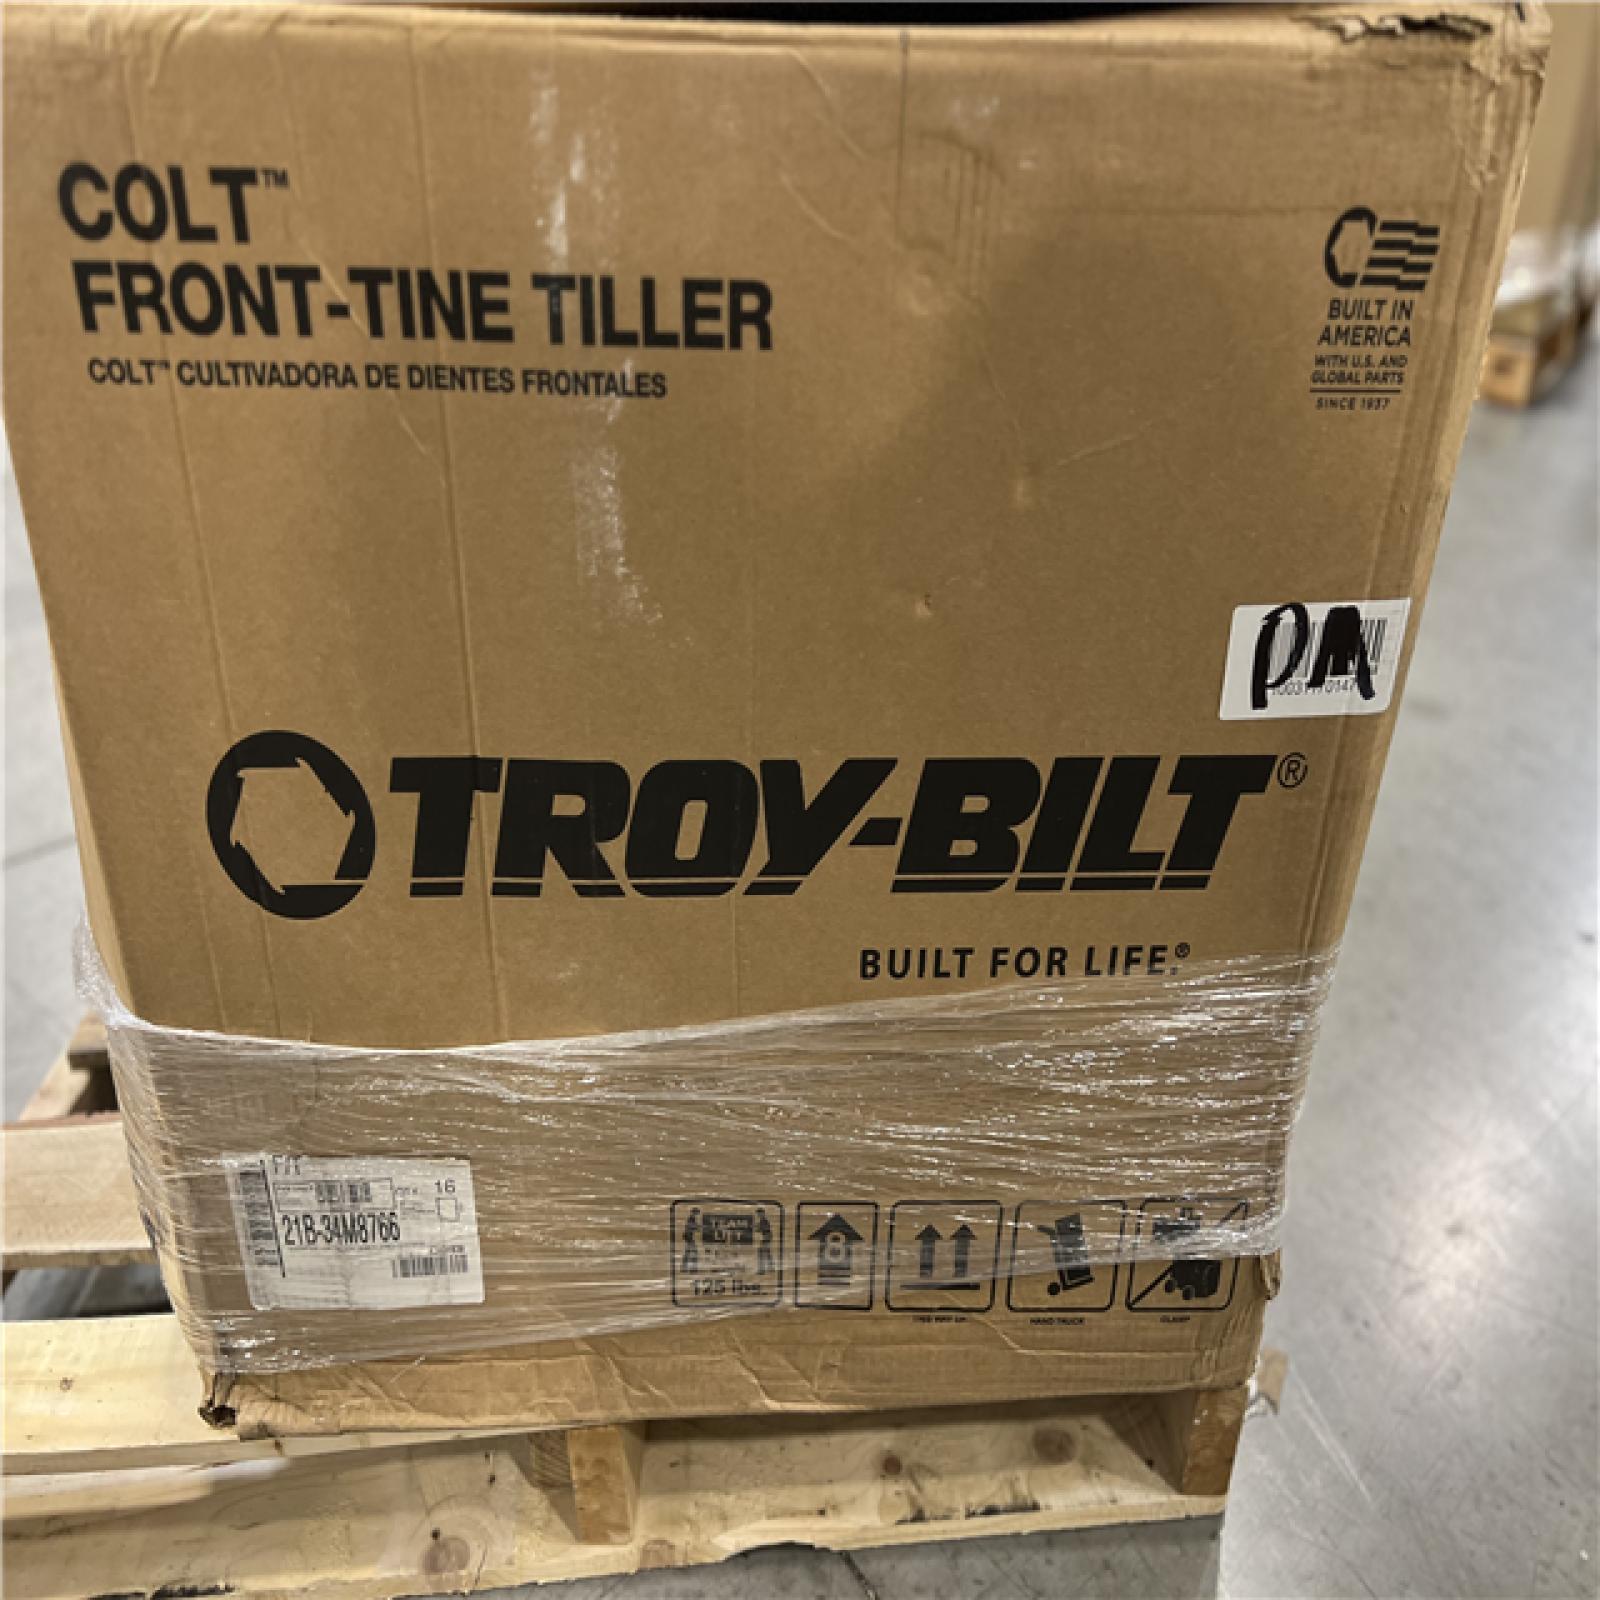 DALLAS LOCATION - Troy-Bilt Colt 24 in. 208 cc OHV Engine Front Tine Forward Rotating Gas Garden Tiller with Adjustable Tilling Width